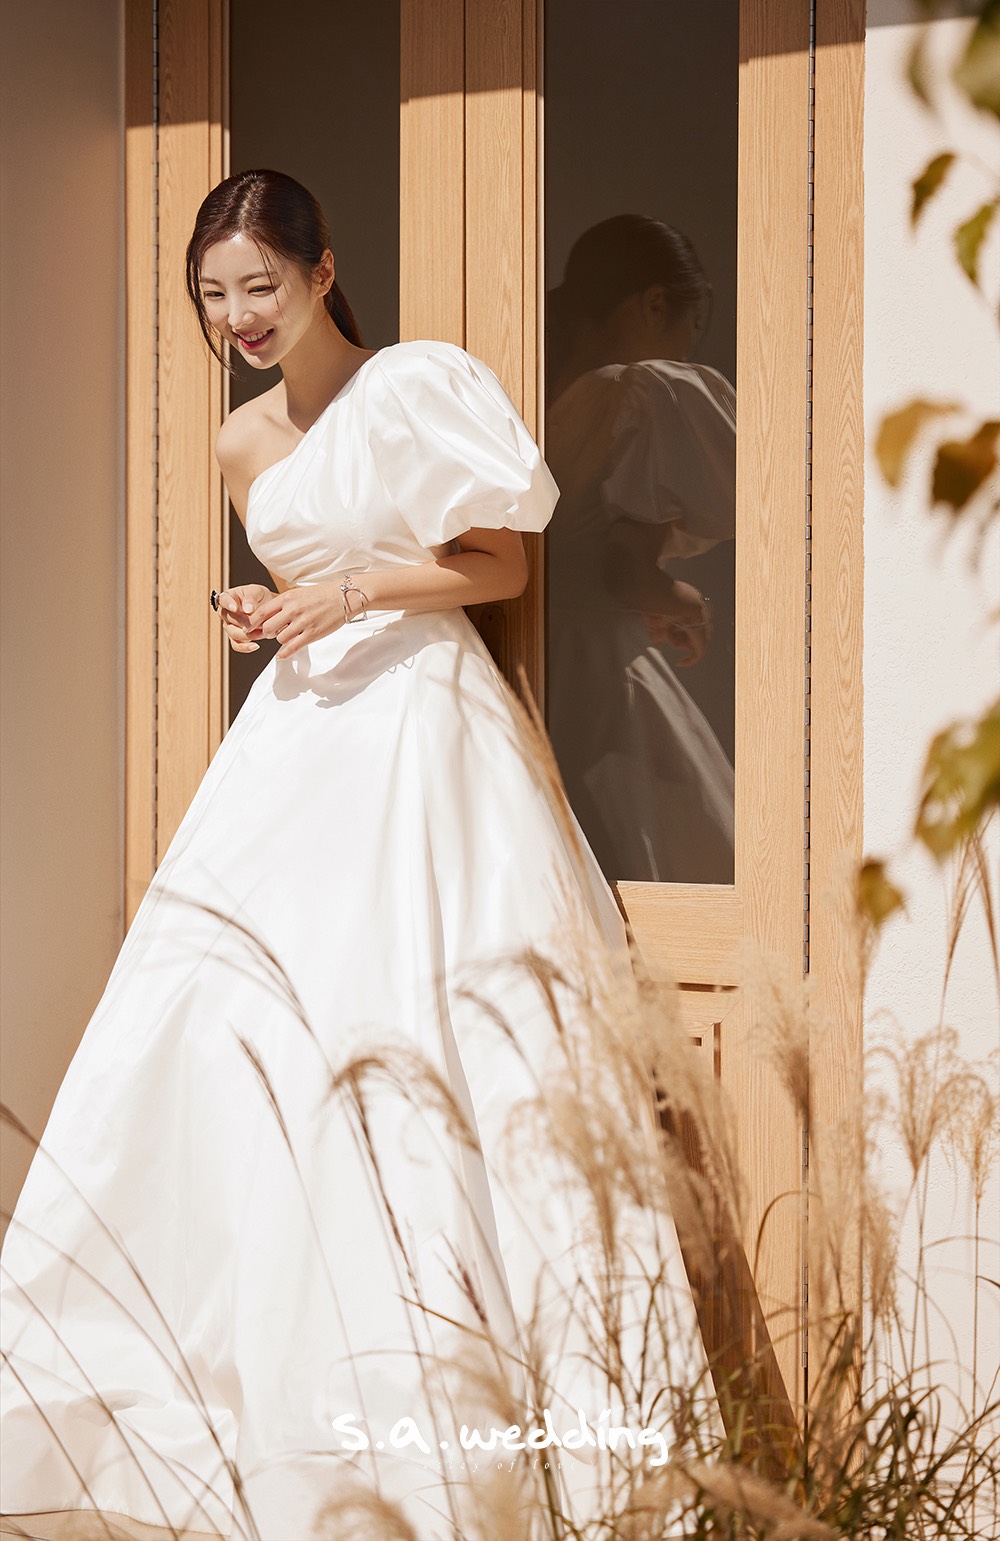 韓國婚攝 首爾婚攝 婚紗攝影 s.a. wedding 韓國外景婚紗攝影